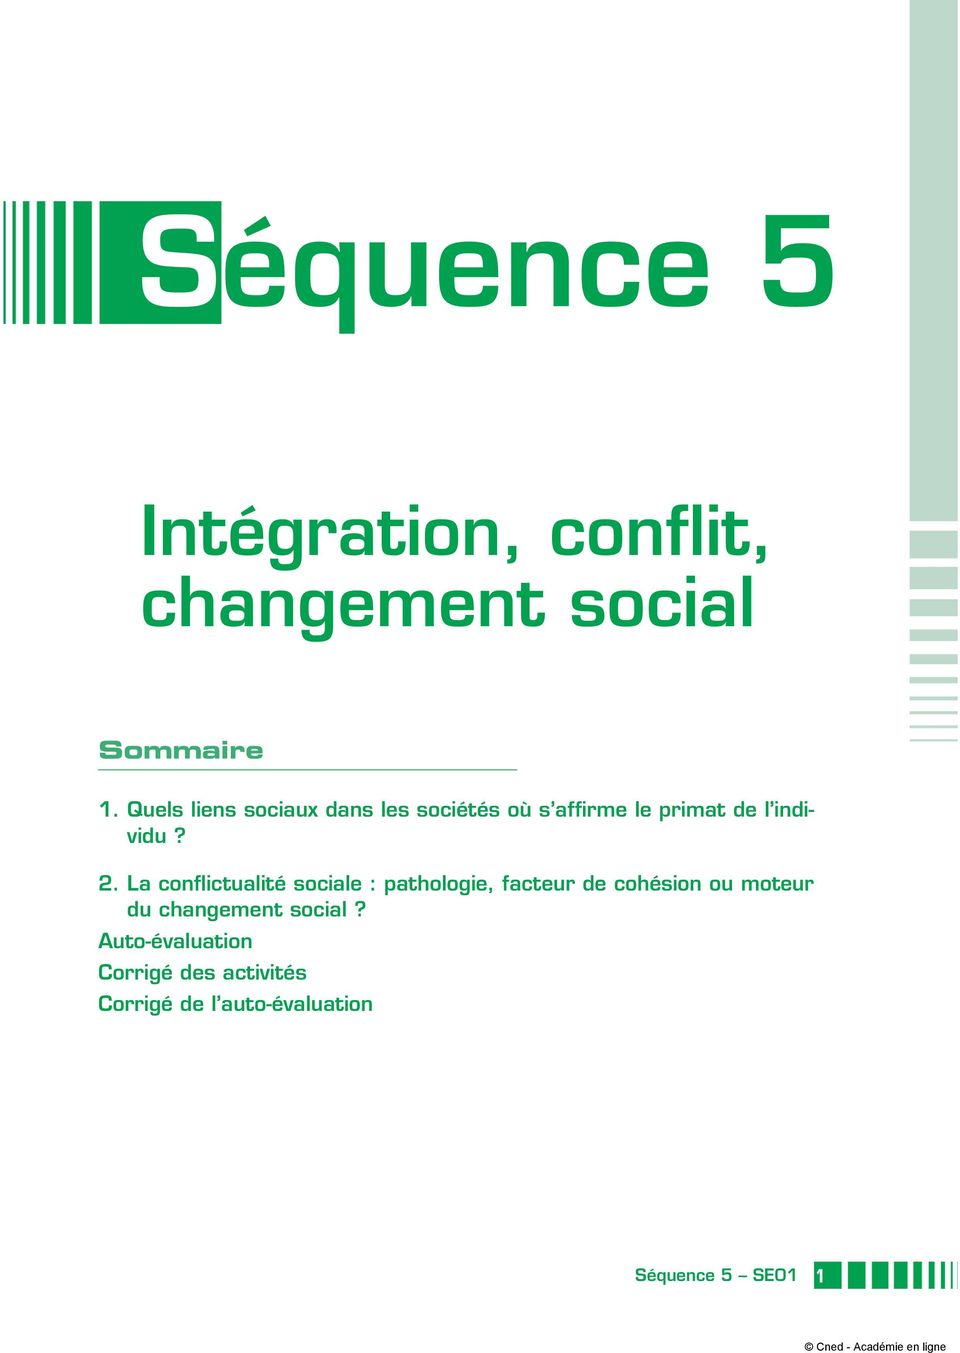 2. La conflictualité sociale : pathologie, facteur de cohésion ou moteur du